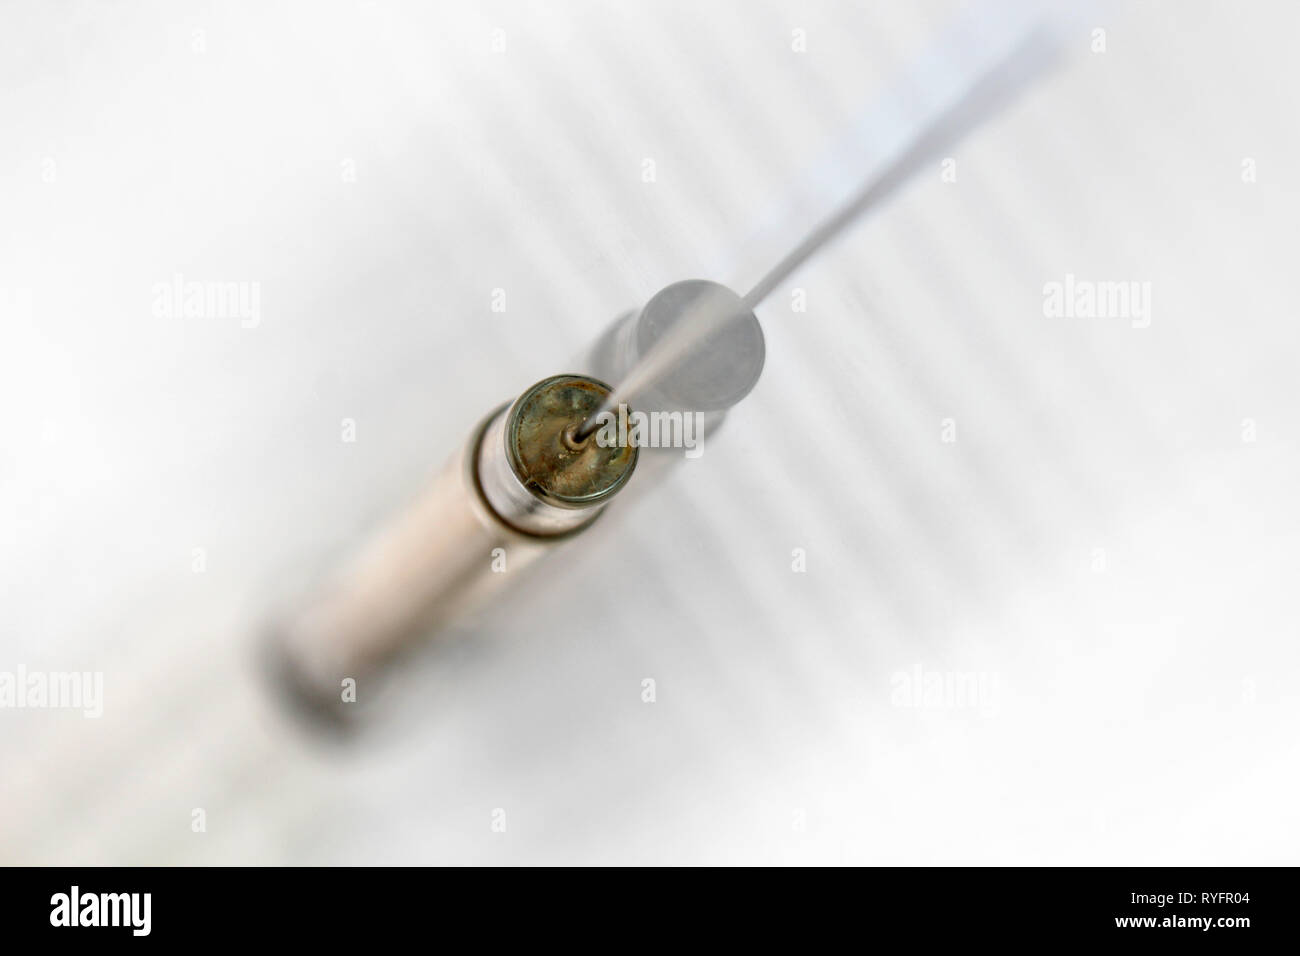 Vintage glass syringe, isolated on white background, close-up Stock Photo